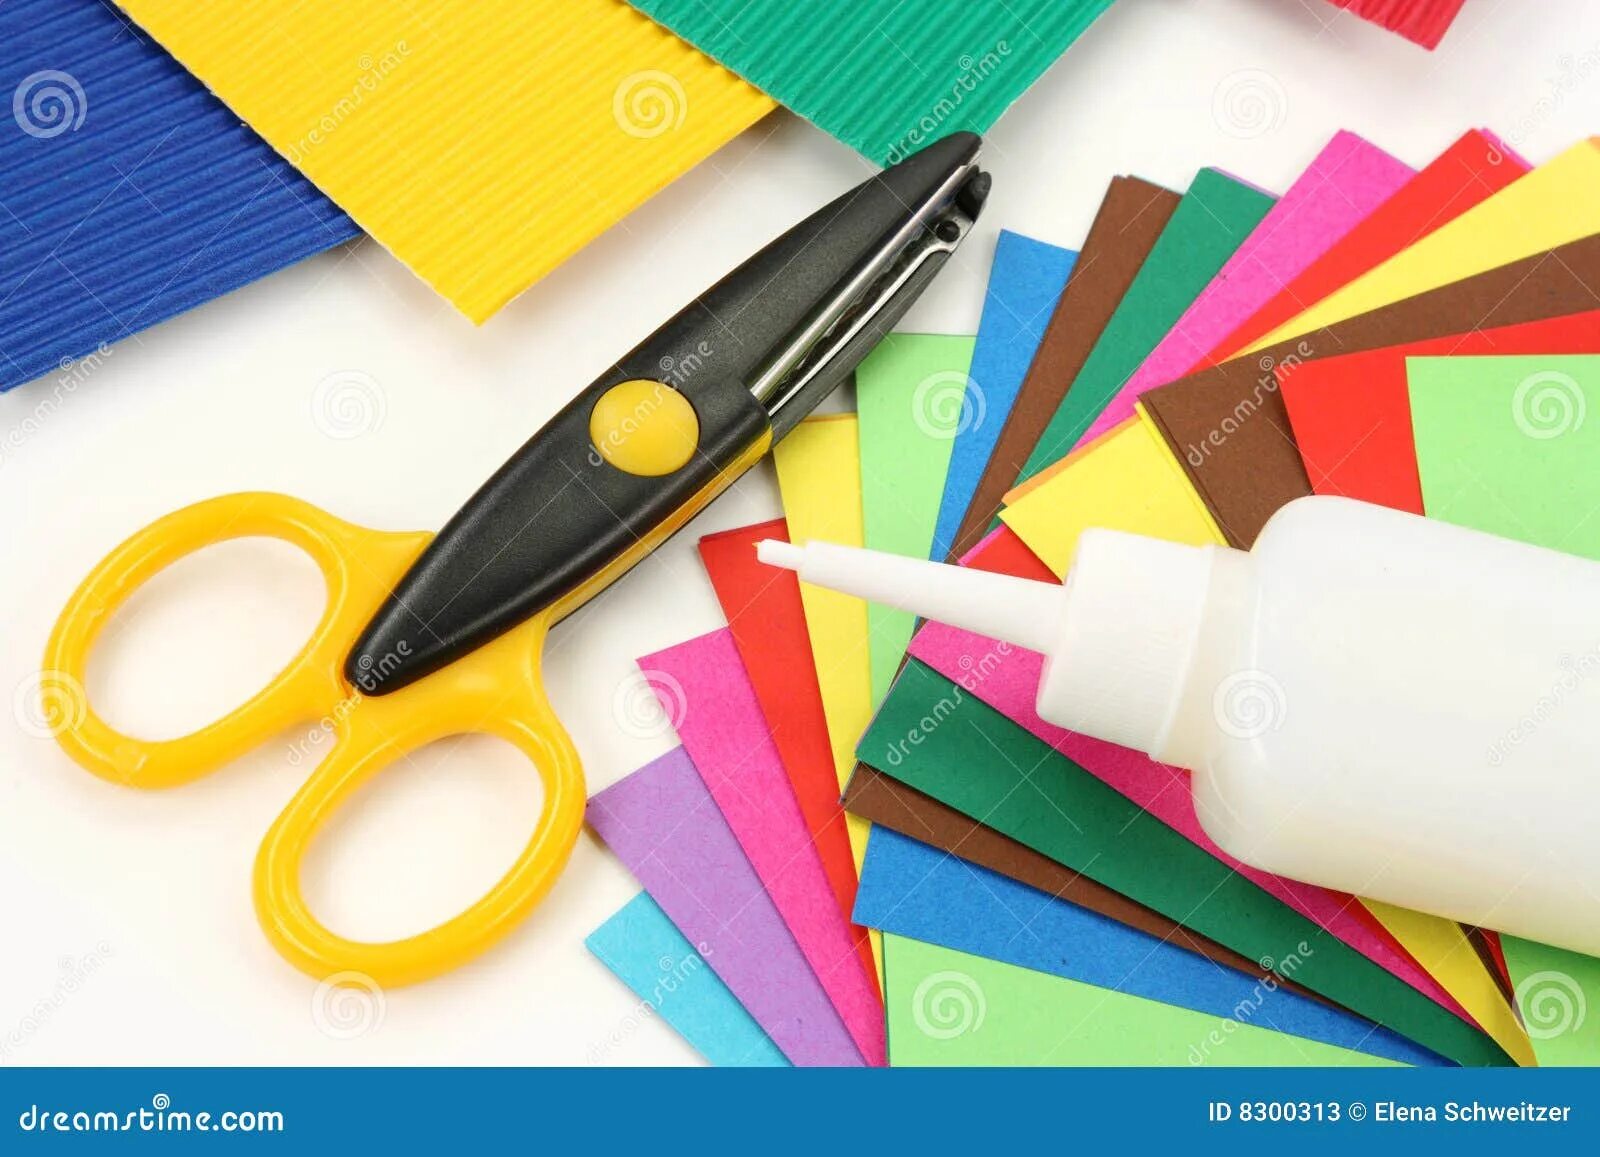 Клей ножницы бумага. Цветная бумага клей. Ножницы и цветная бумага. Материалы и инструменты для аппликации. Ножницы маркер